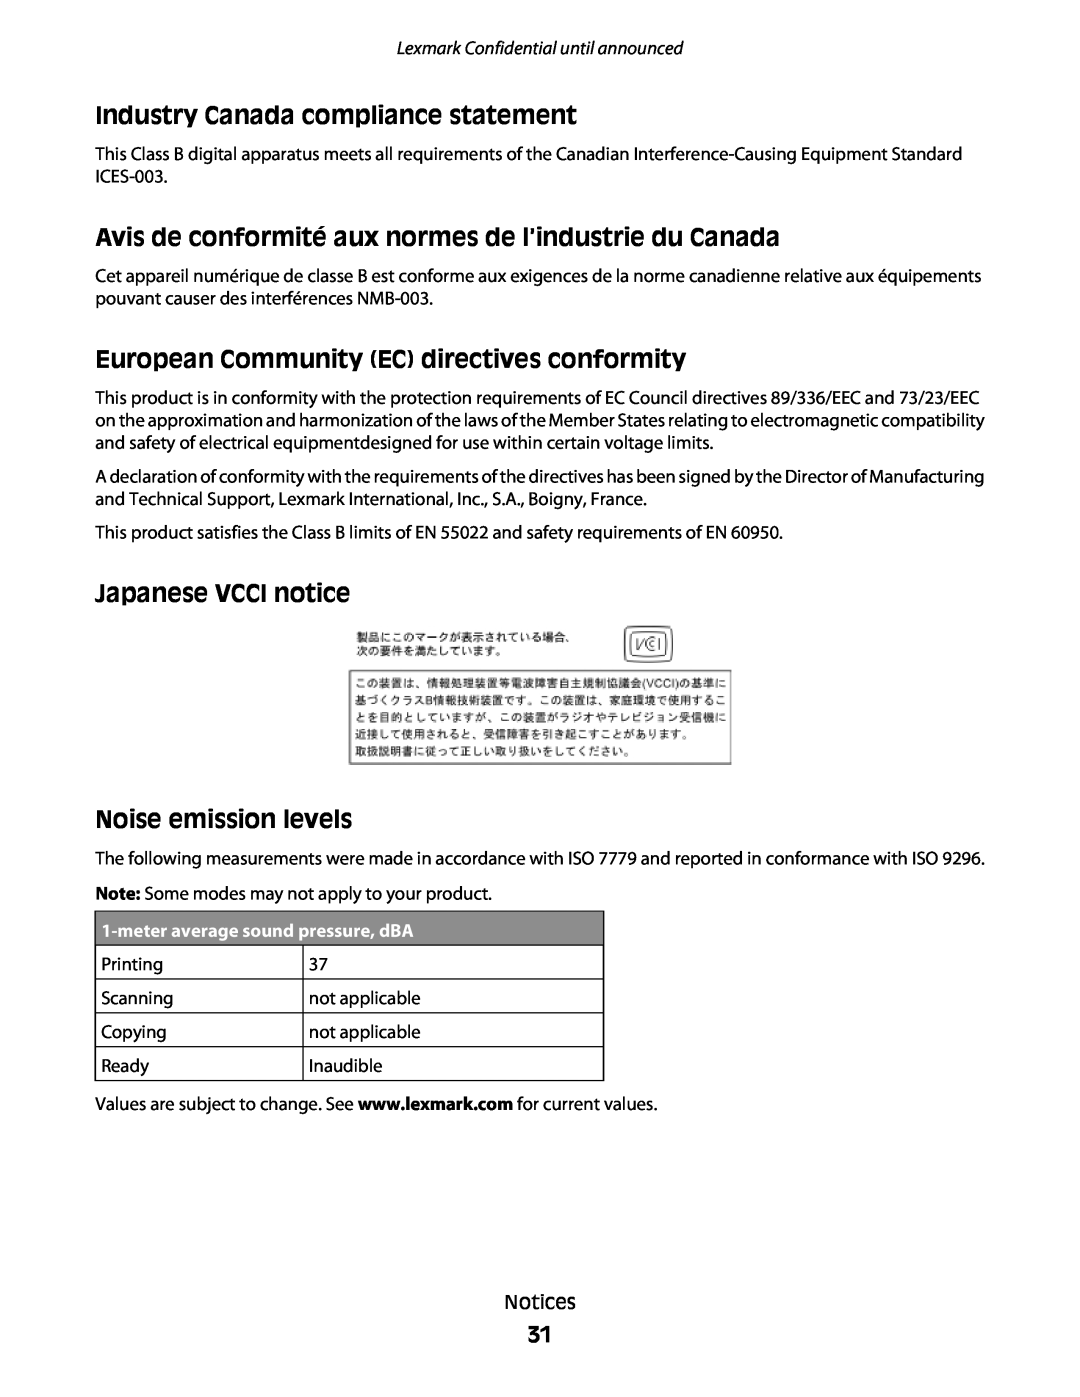 Lexmark P200 manual Industry Canada compliance statement, Avis de conformité aux normes de l’industrie du Canada 